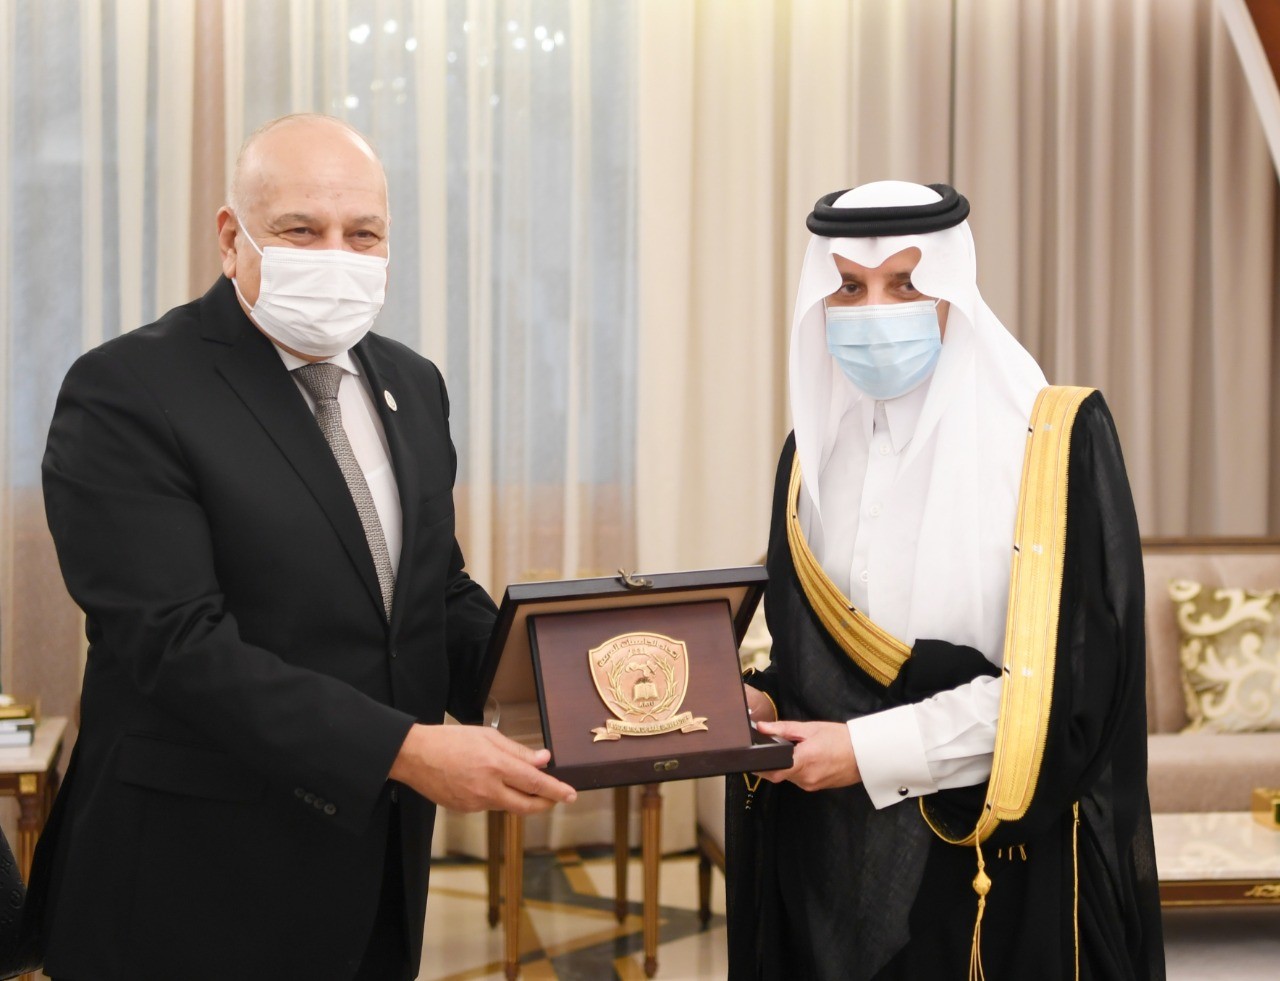 الأمير سعود بن نايف يلتقي رئيس وأعضاء المجلس التنفيذي للجامعات العربية